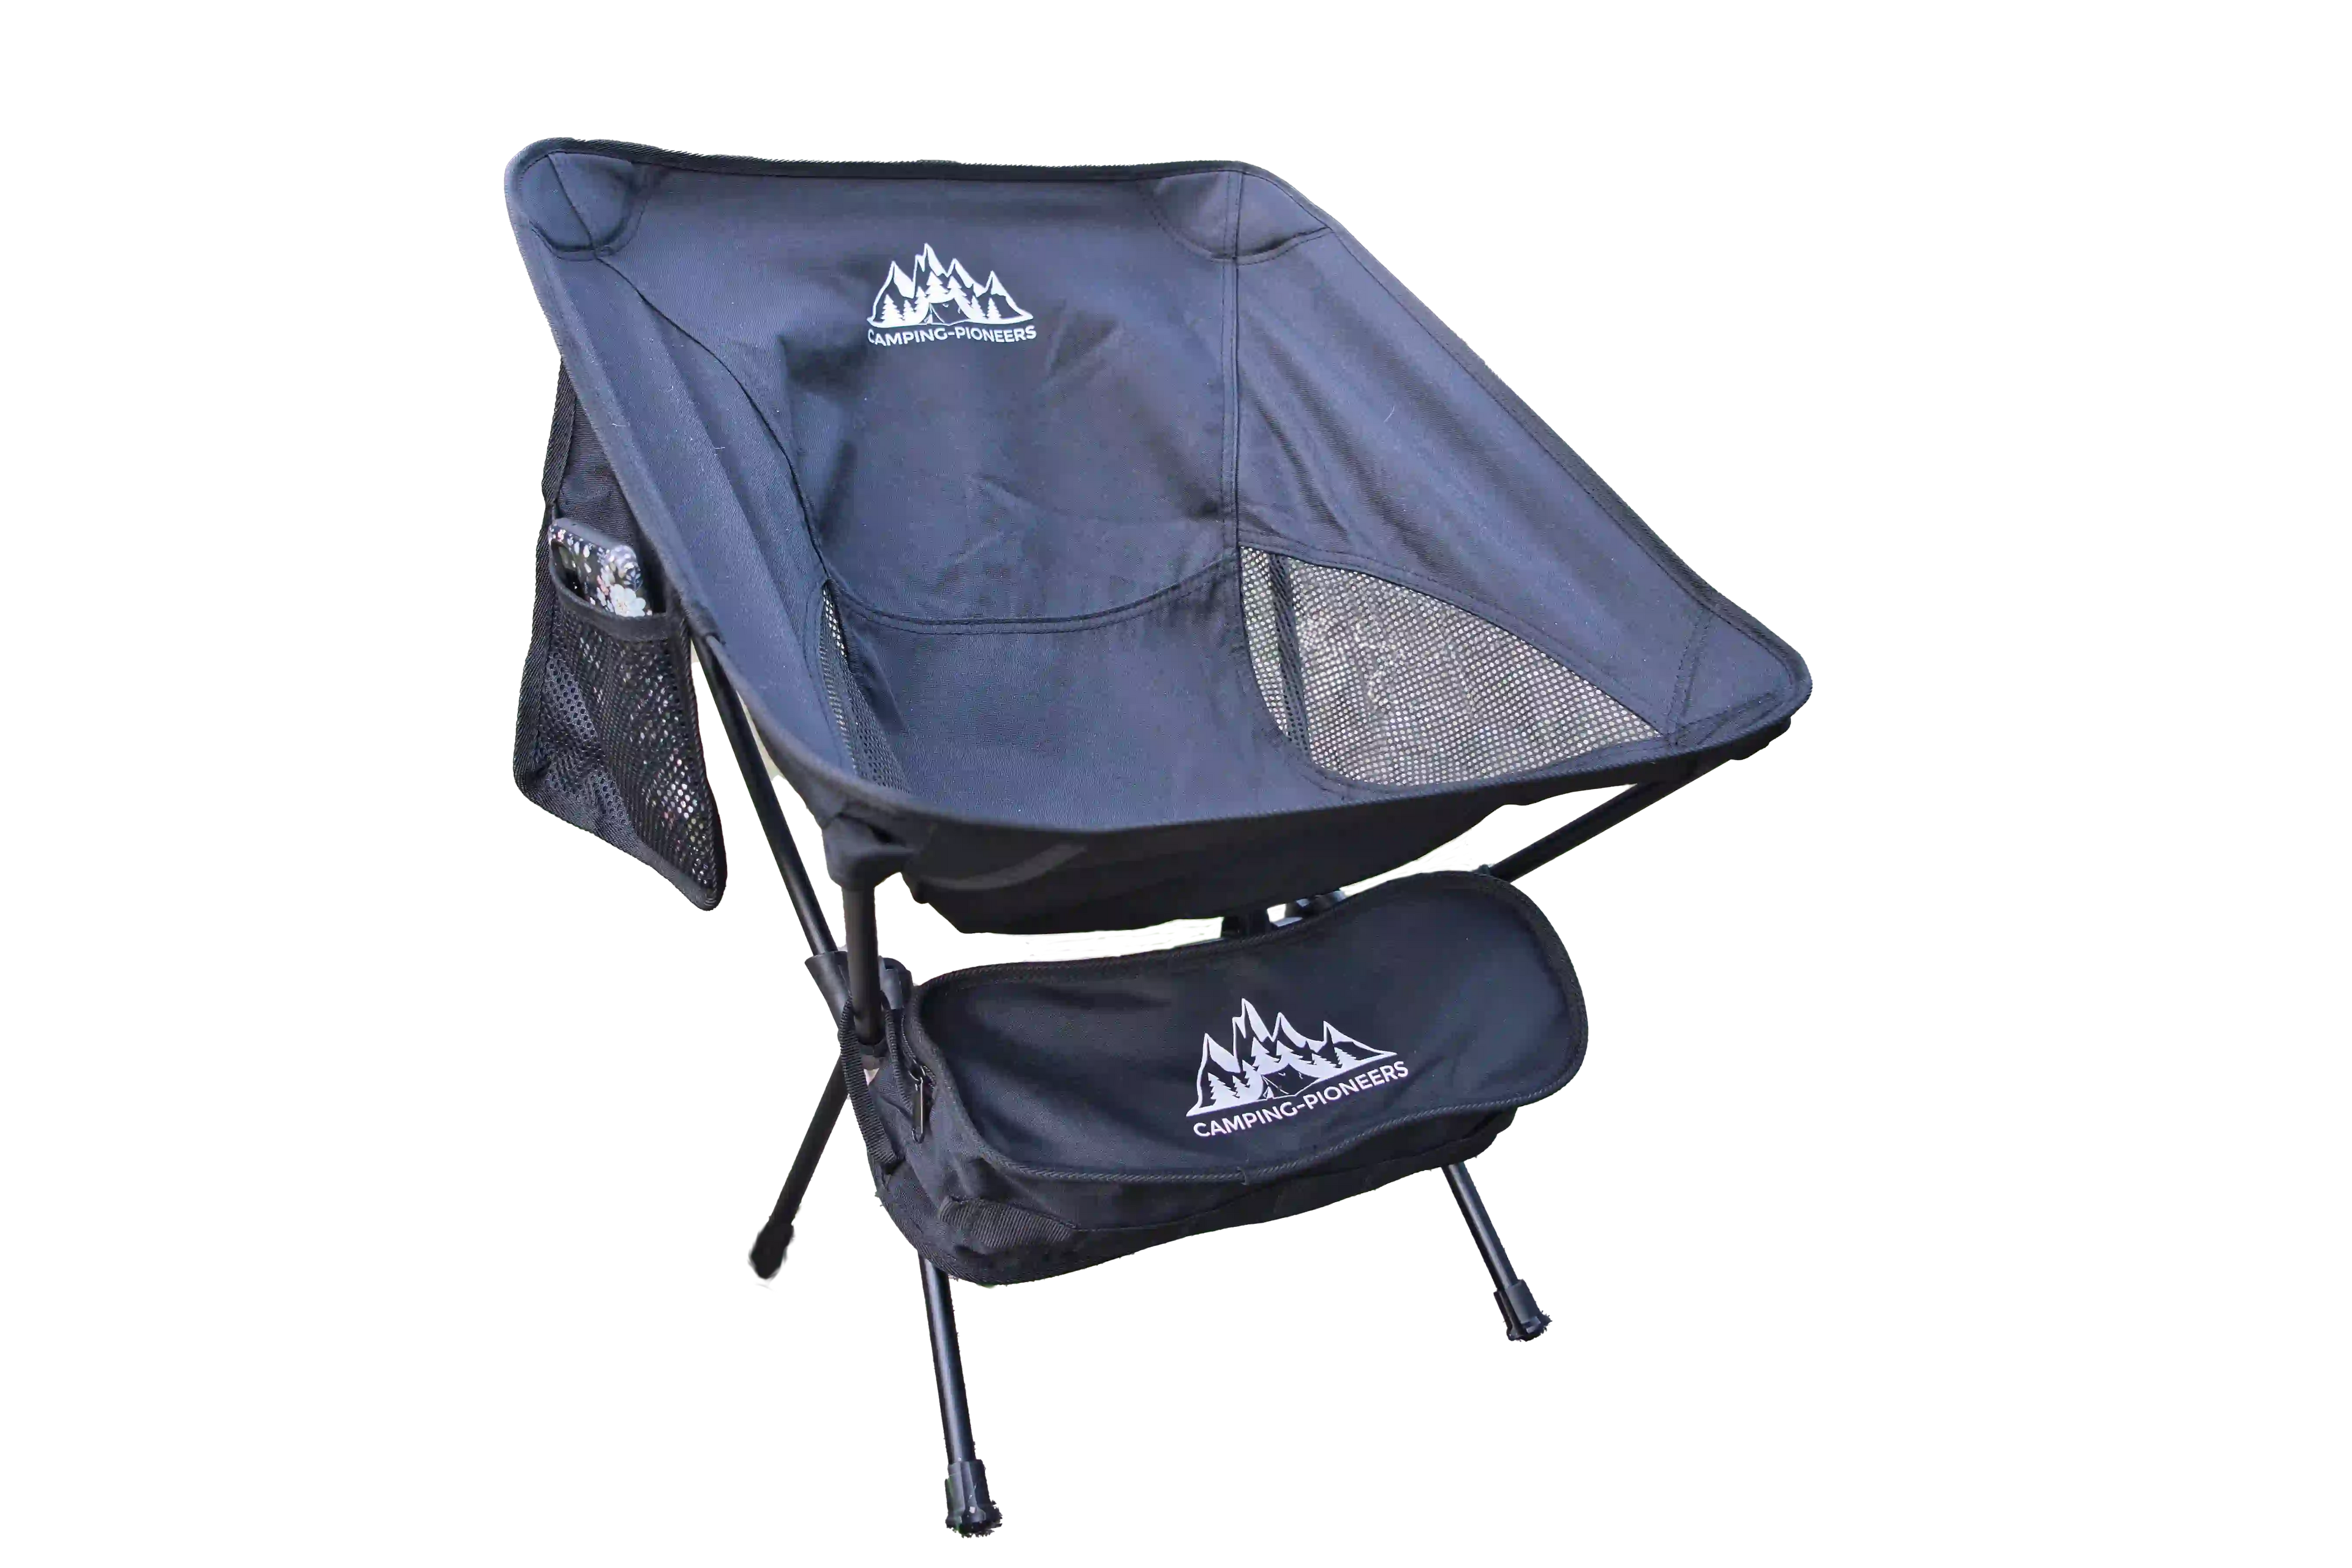 Chaise COMPACT Original Pioneers - légère, petite taille, rapide à installer - chaise de camping